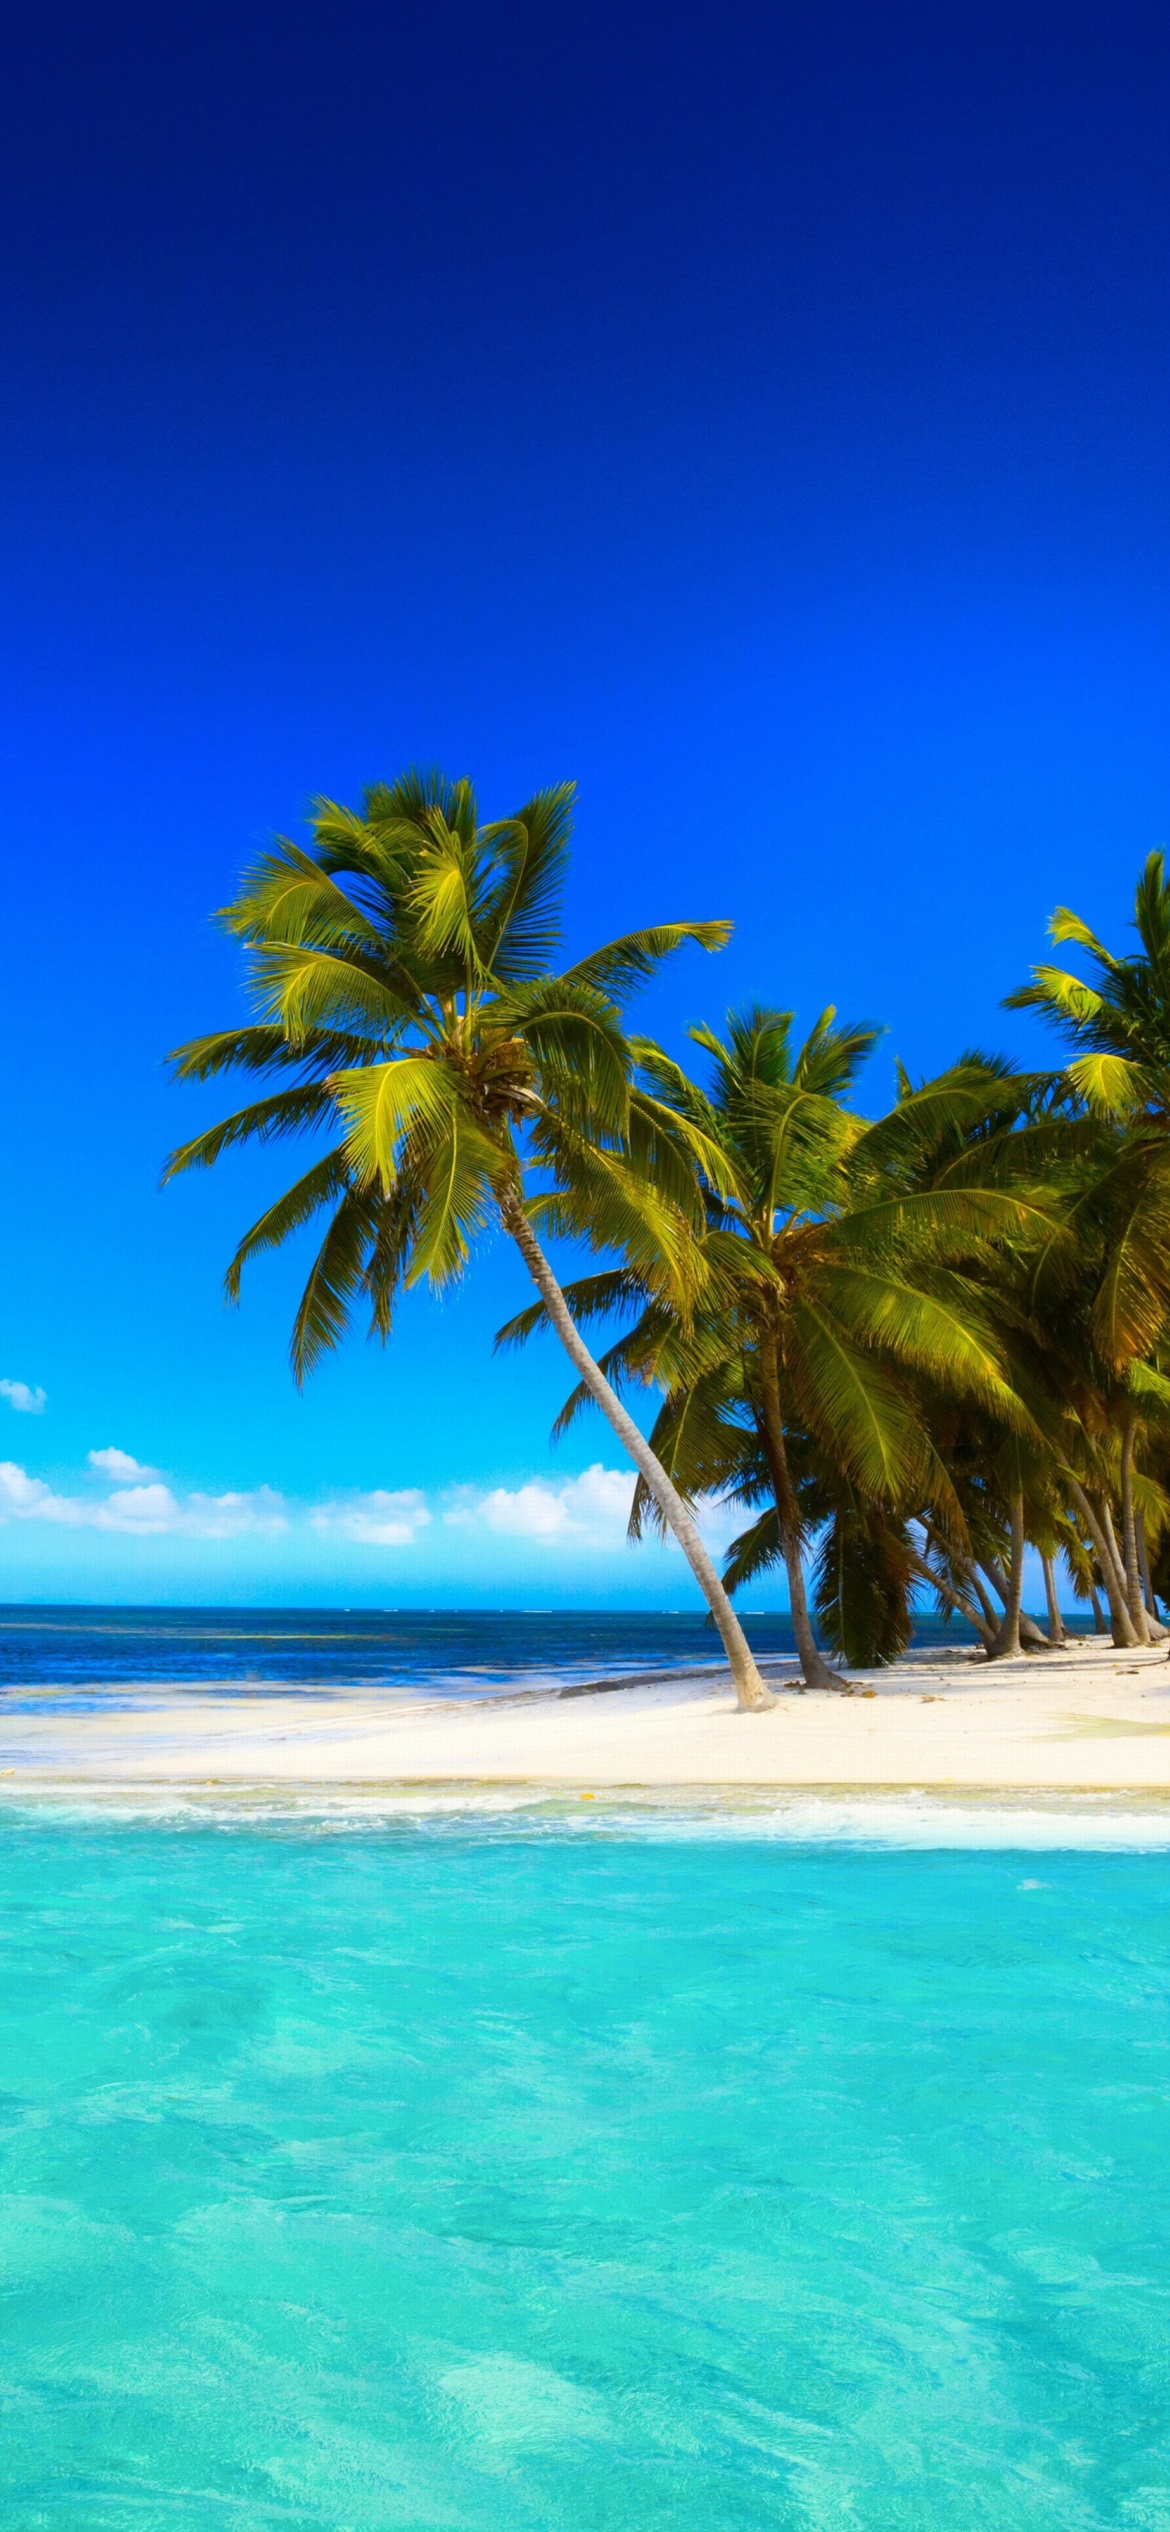 Обои Tropical Vacation on Perhentian Islands 1170x2532